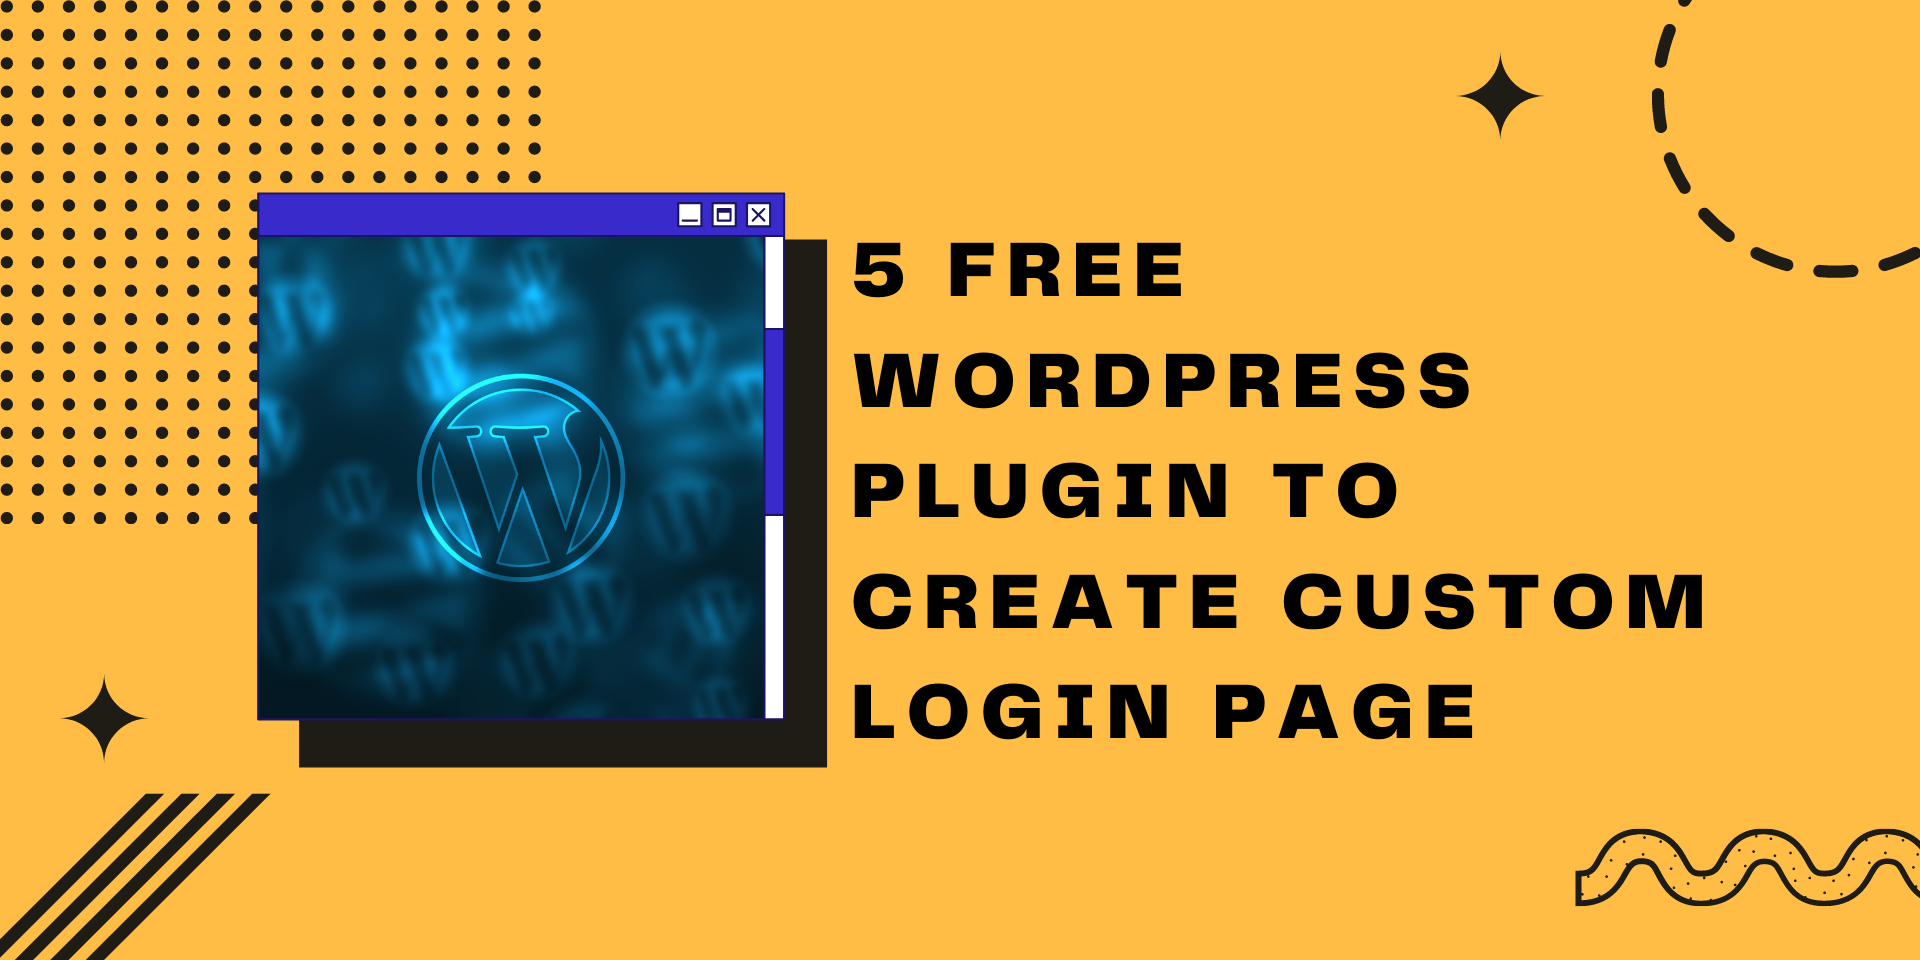 5 Free WordPress Plugin To Create Custom Login Page